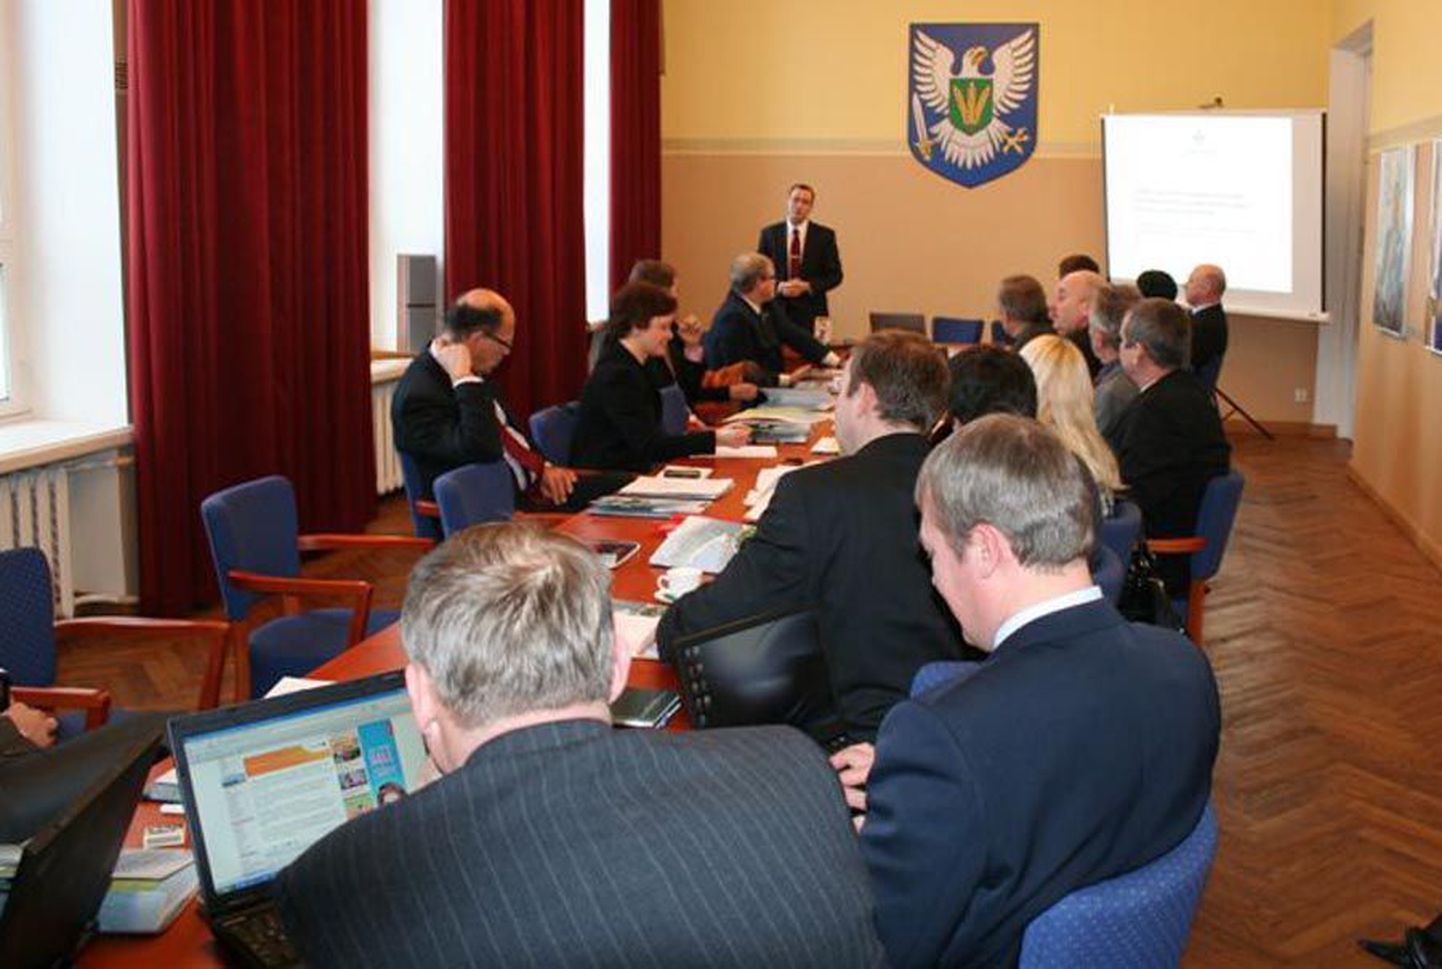 Regionaalministri ja maavanemate igakuine koosolek peeti teisipäeval Viljandis.